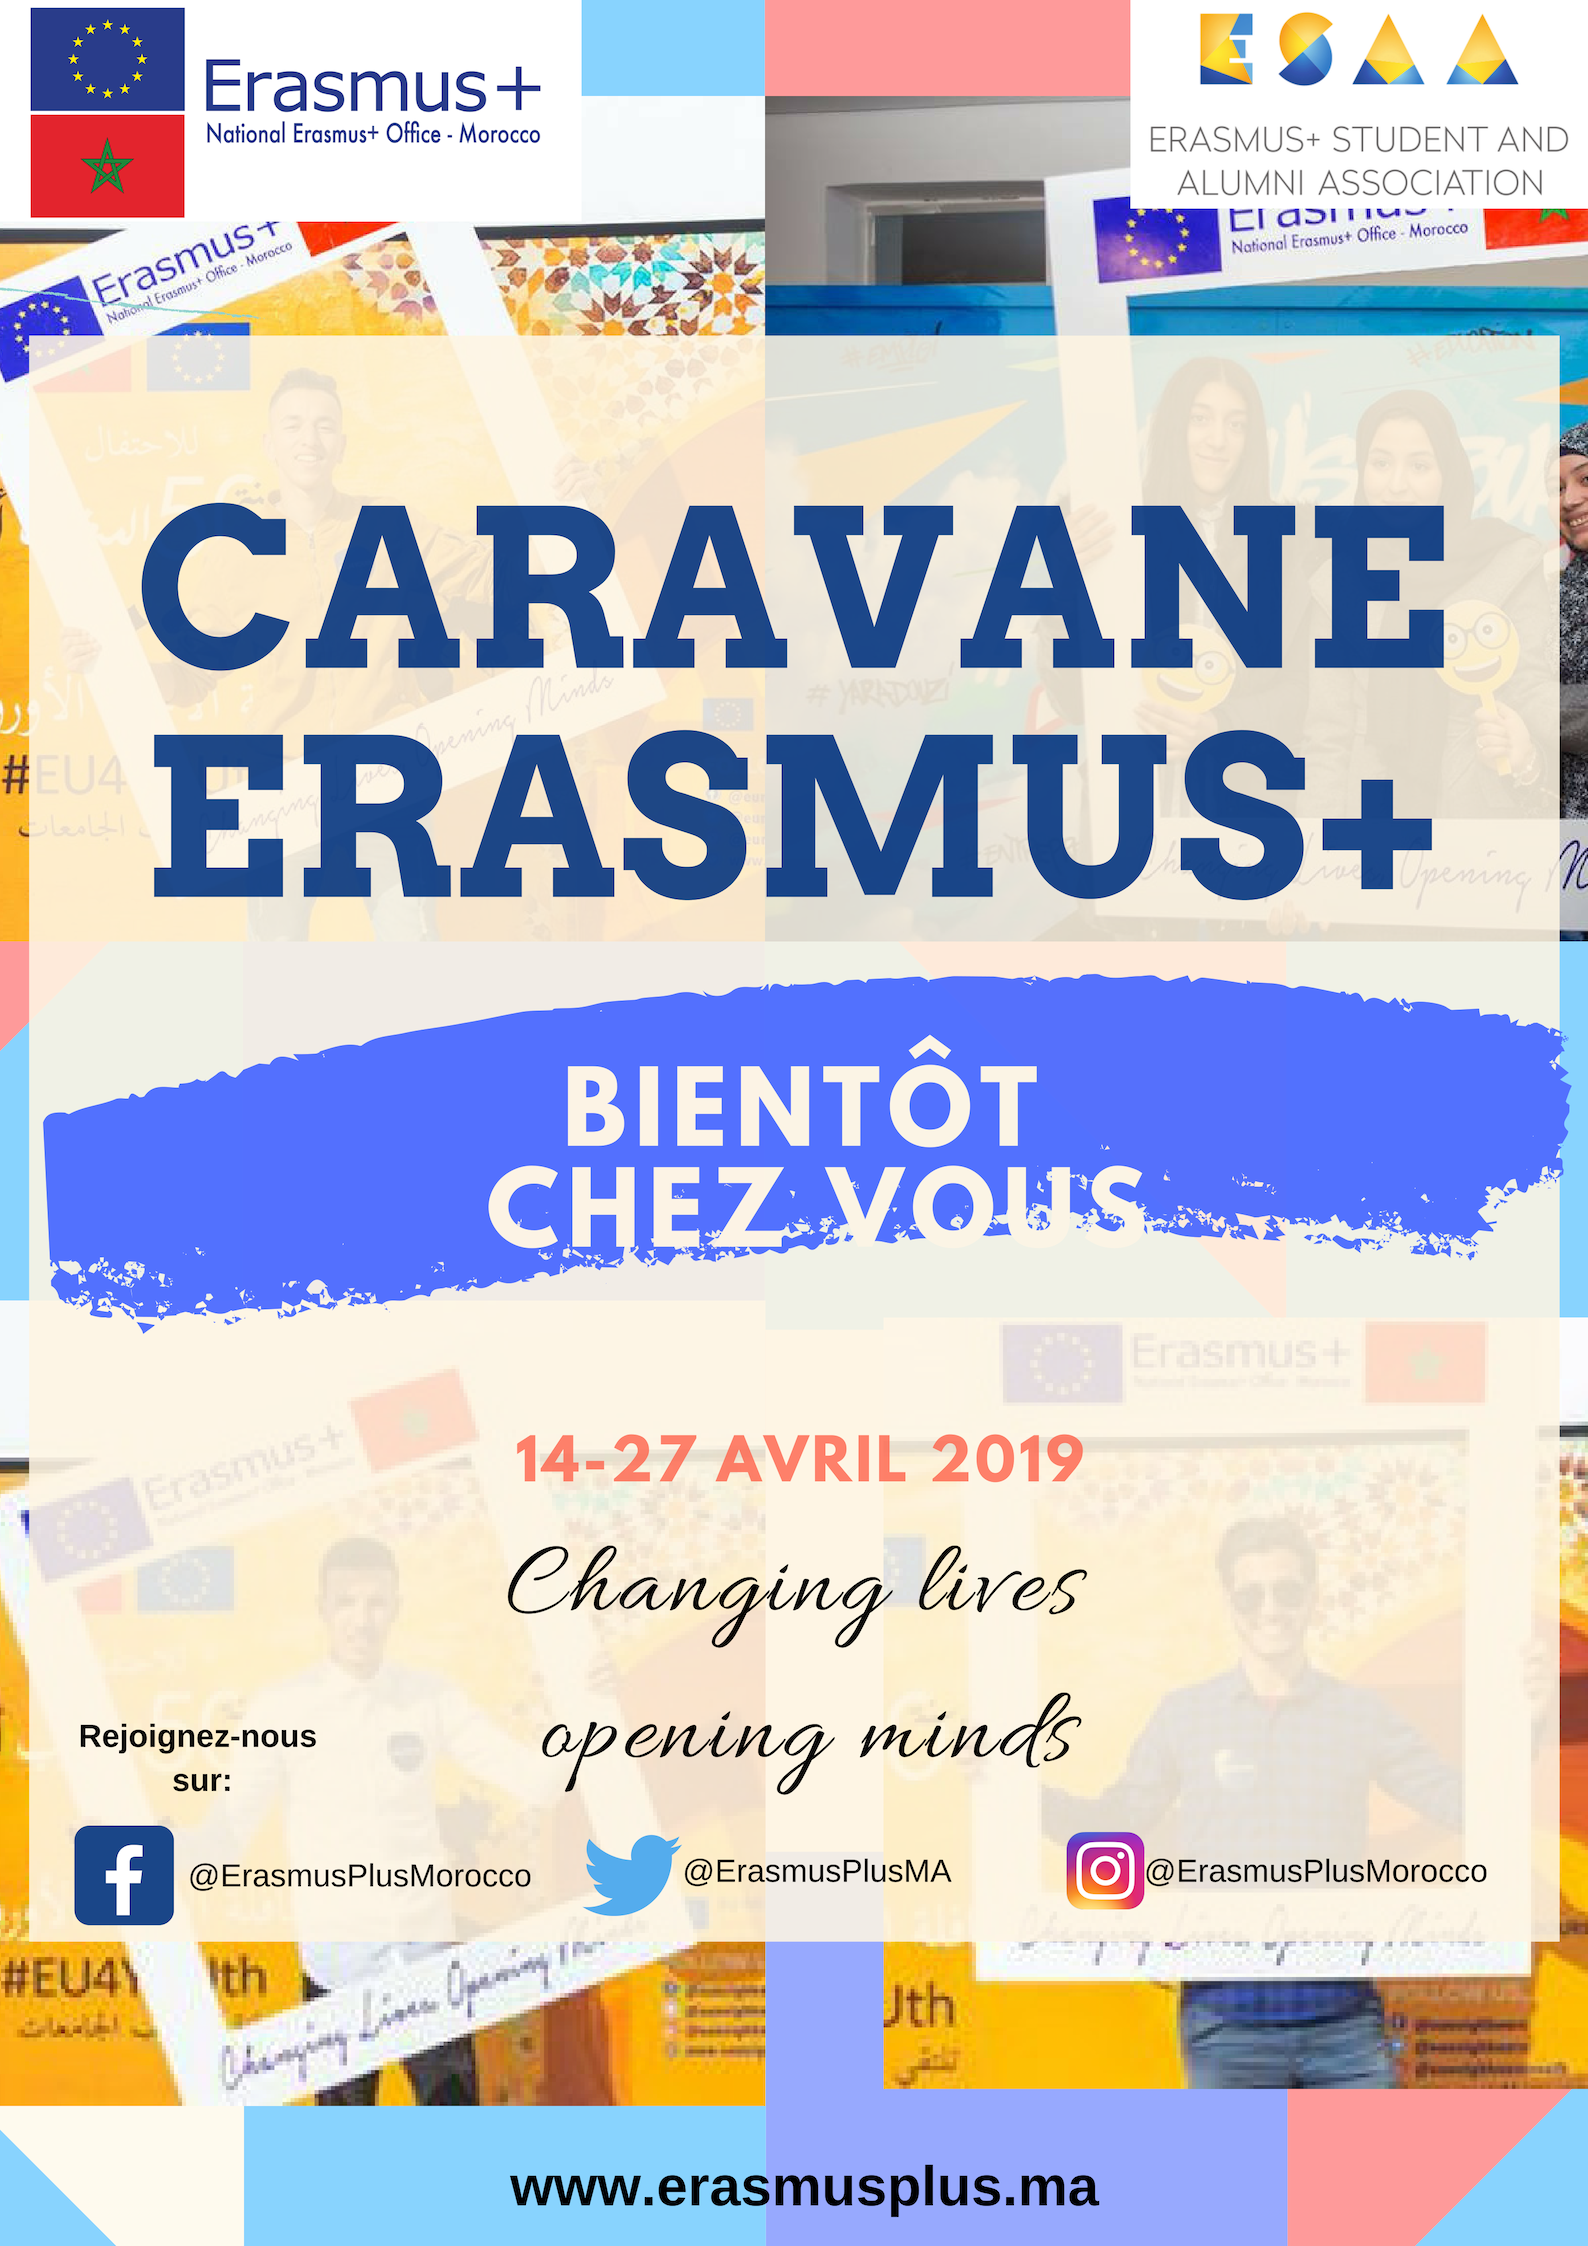 La caravane Erasmus+ : Changing lives, opening minds